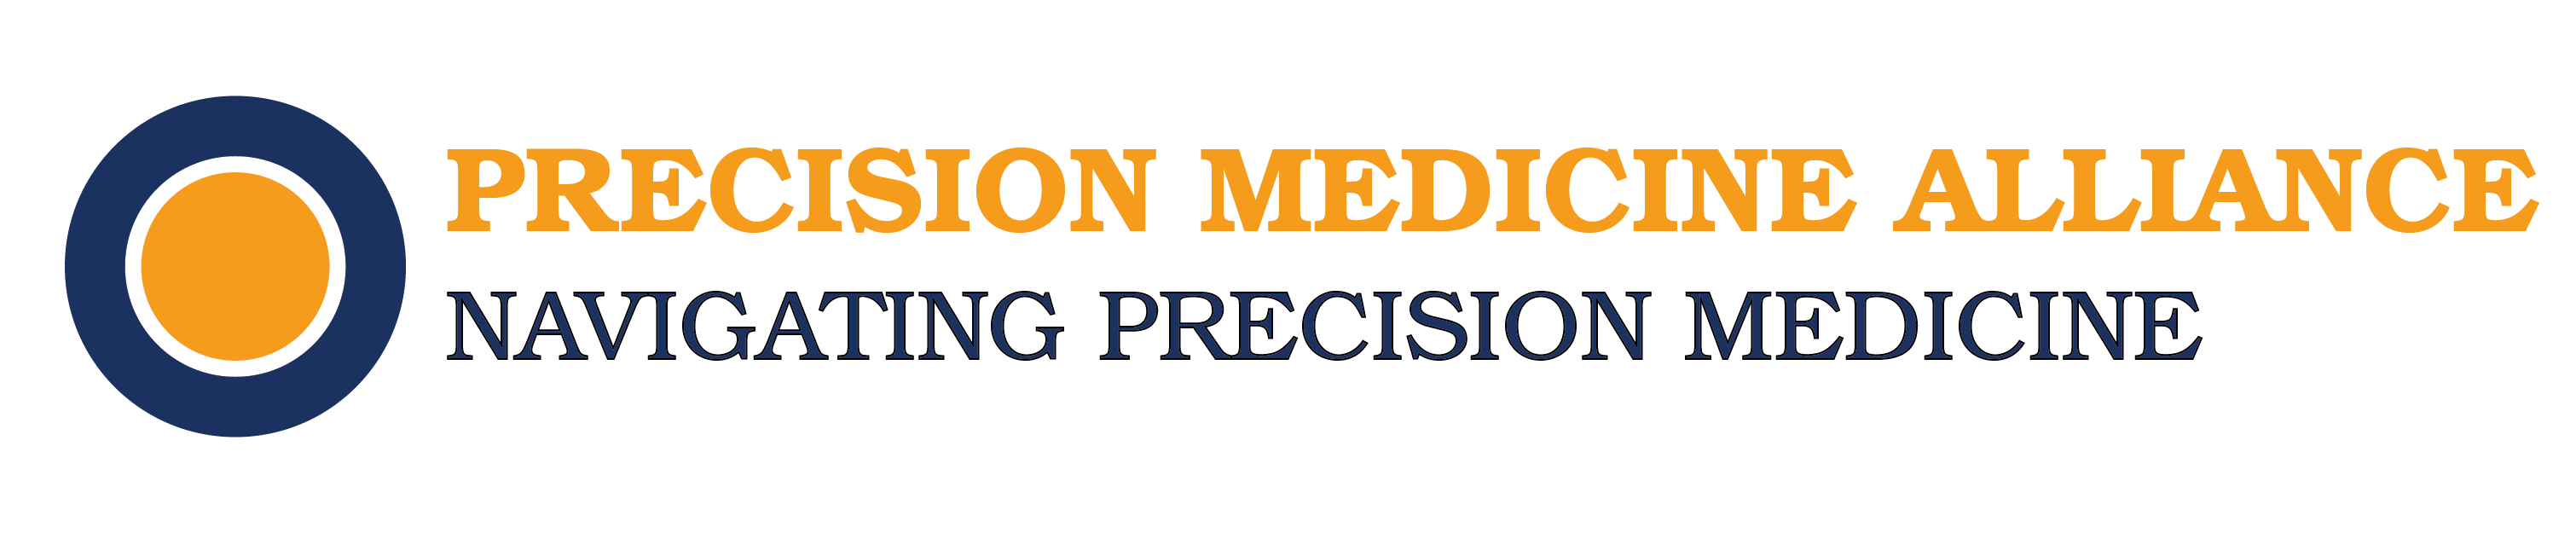 Precision Medicine Alliance